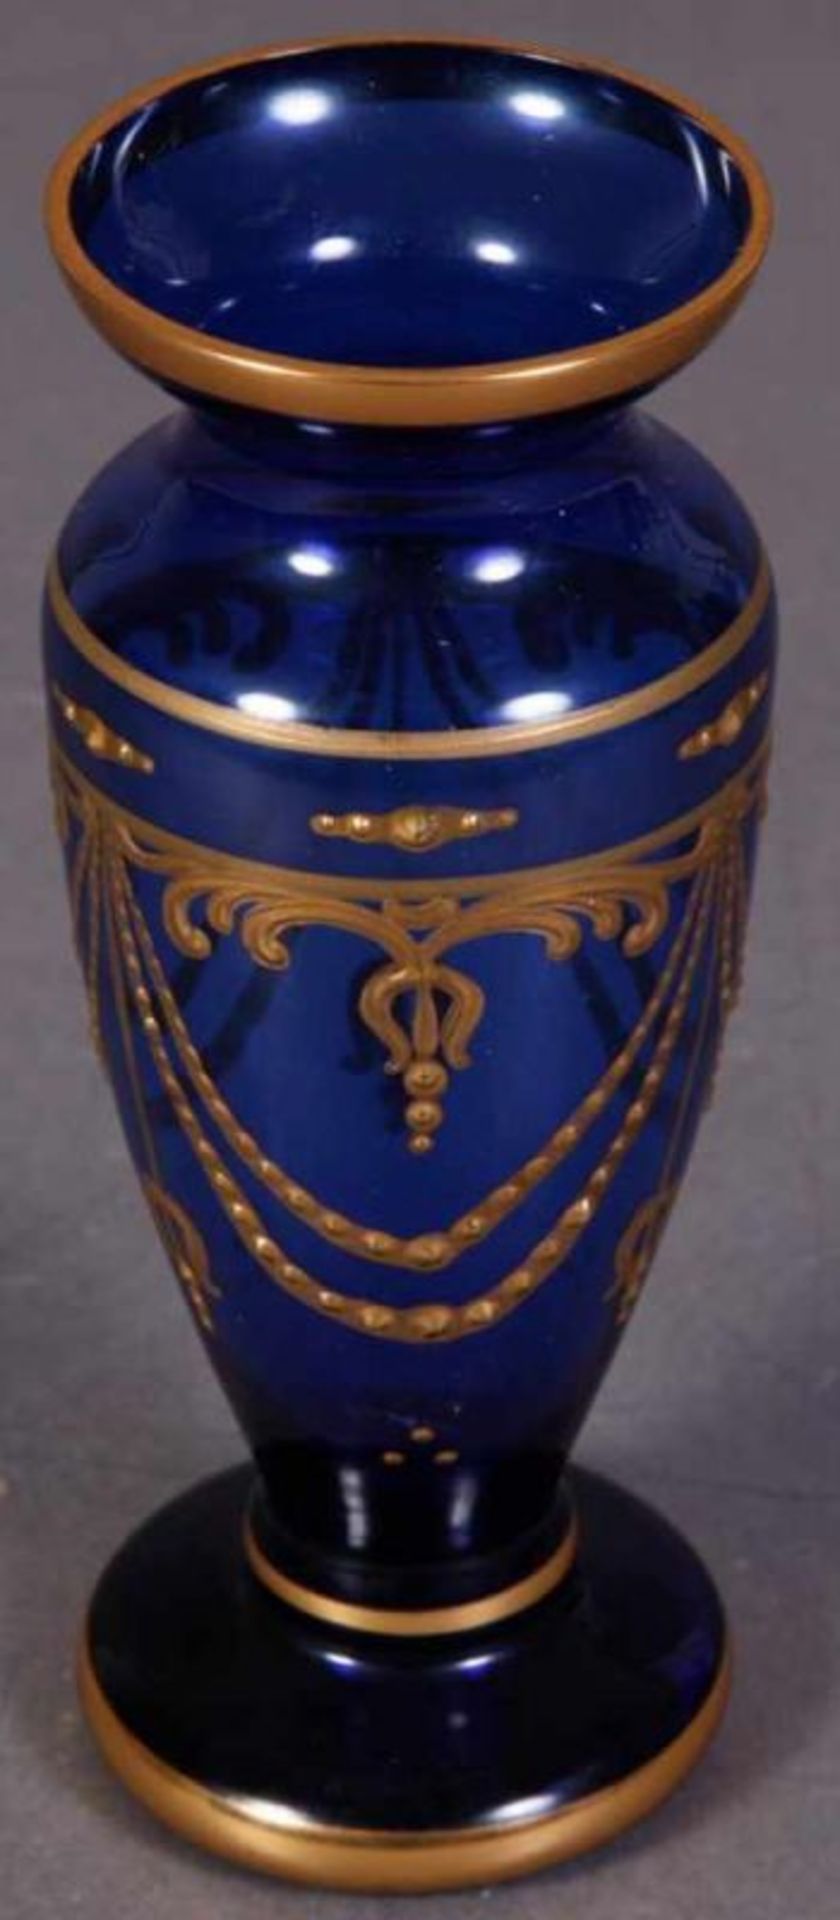 Blaue Tischvase/Glasvase mit reichem Golddekor, um 1900. Höhe 16,5 cm. - Image 2 of 5